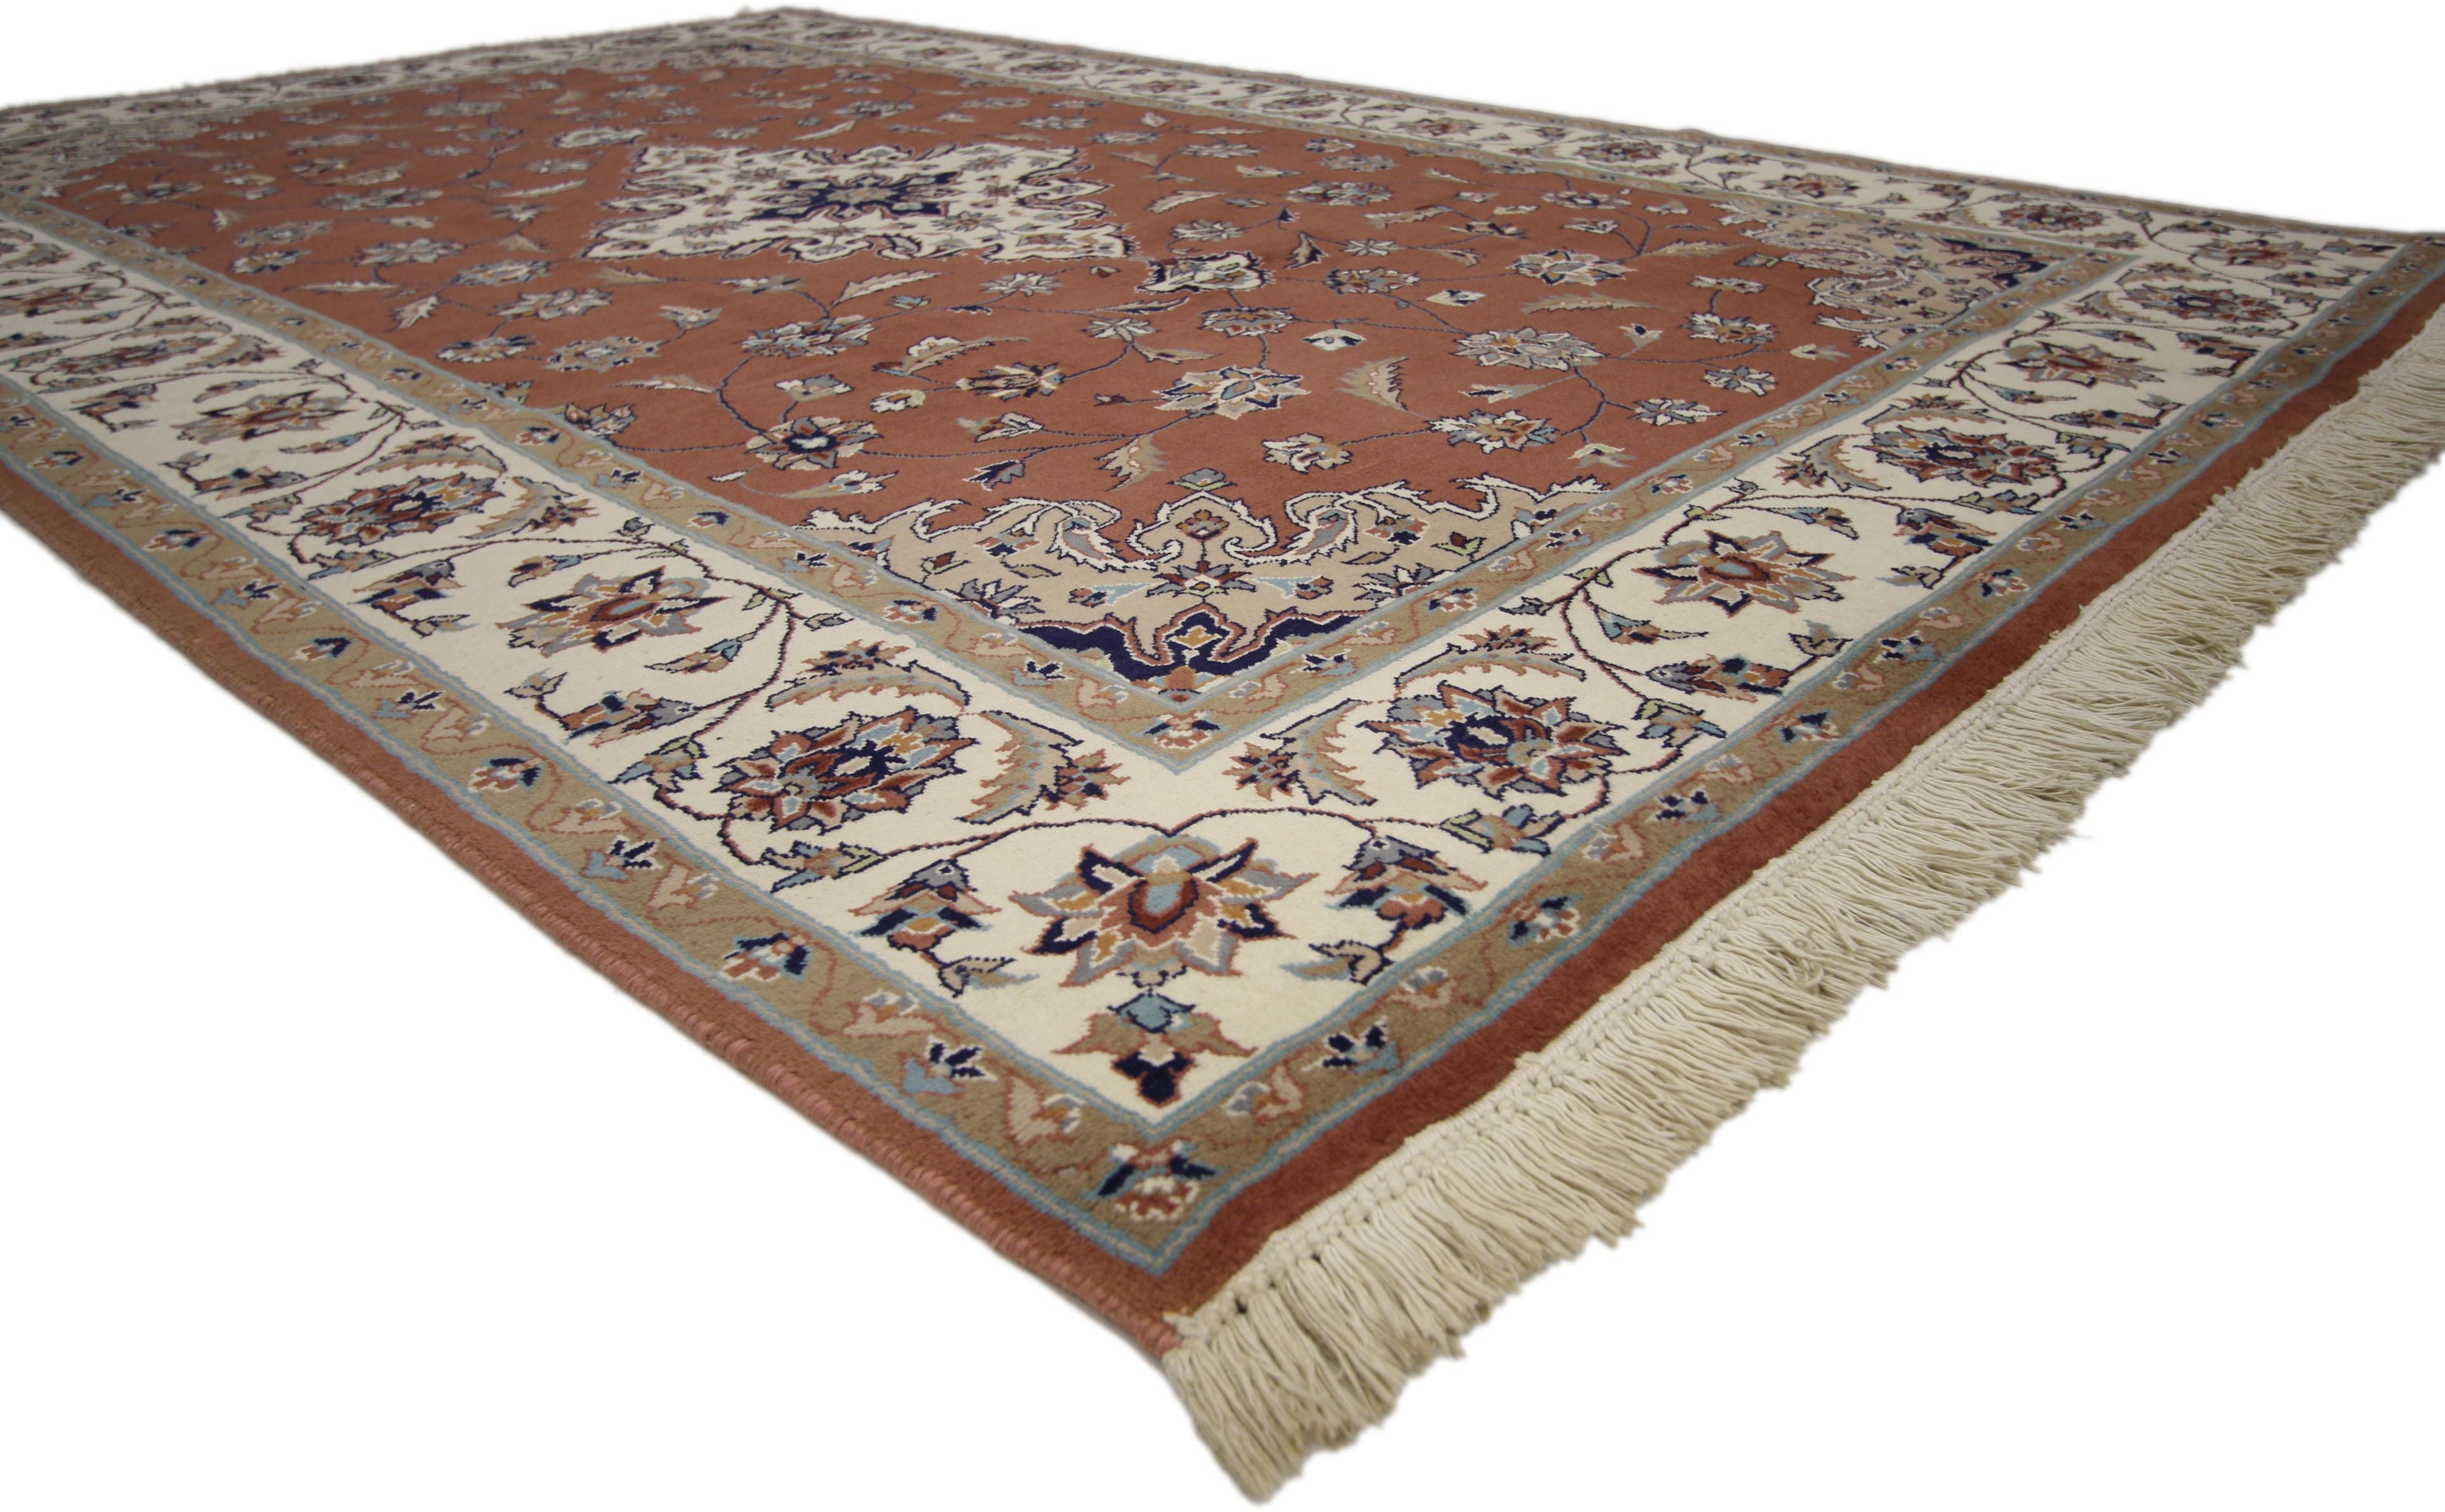 72029 Pakistanischer Vintage-Teppich mit persischem Design und arabeskem Kunsthandwerksstil. Dieser handgeknüpfte alte pakistanische Wollteppich zeigt ein wunderschönes persisches Muster. Es besteht aus einem cremefarbenen Medaillon mit Anhängern,